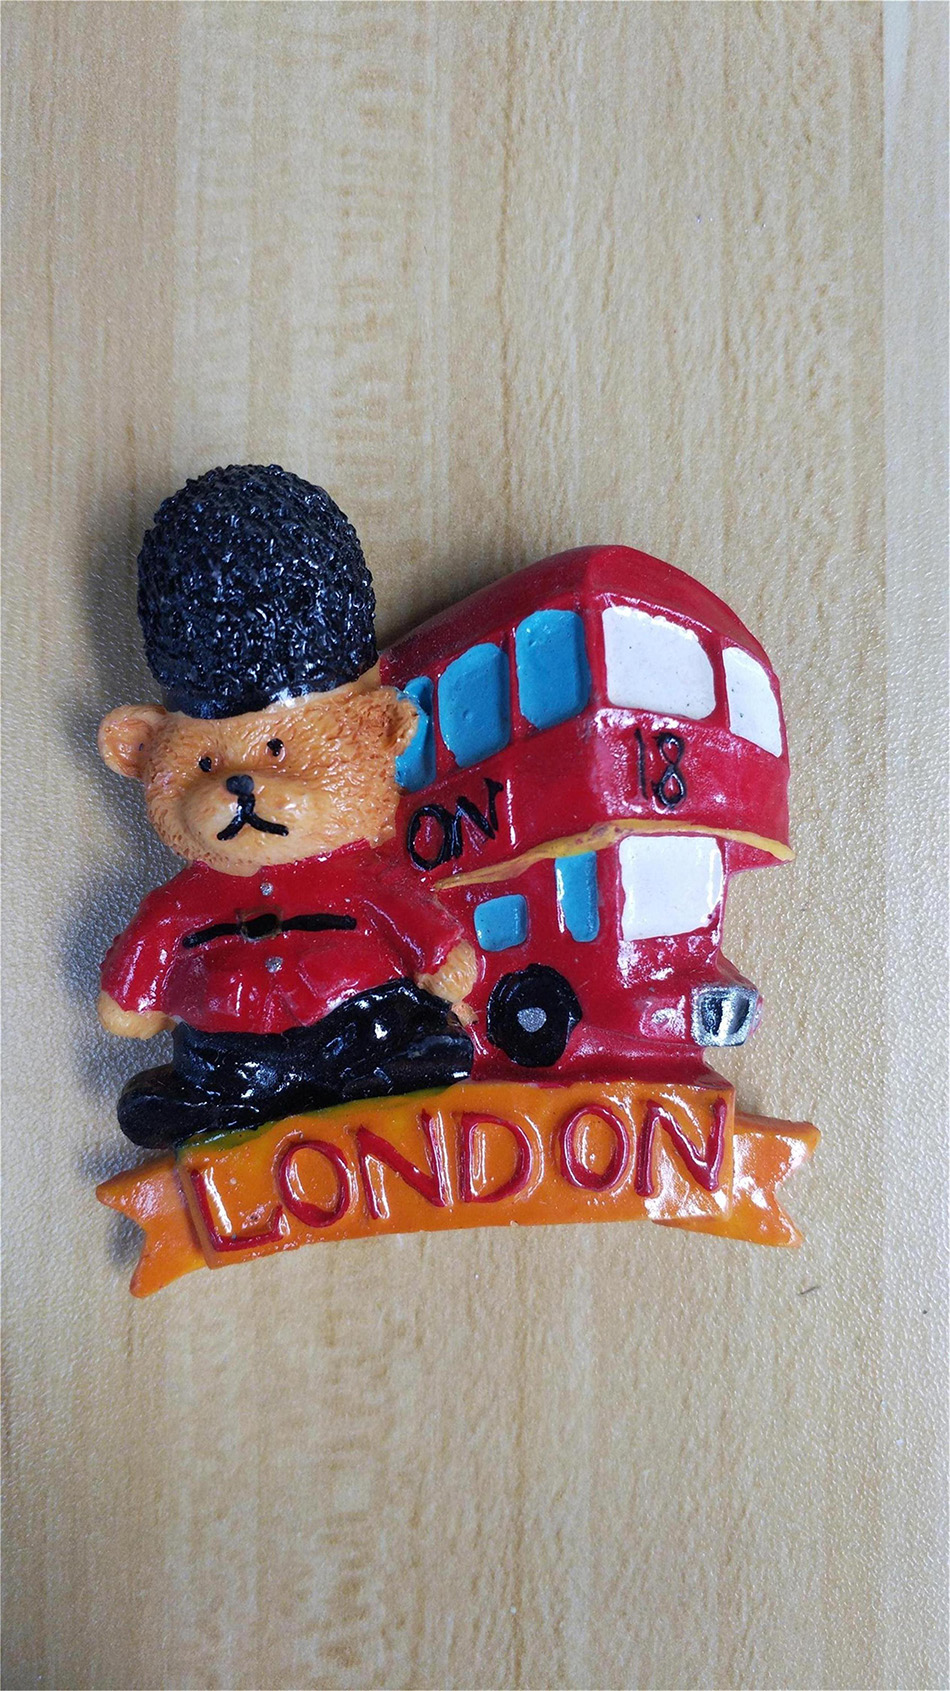 英国旅游磁贴 伦敦冰箱磁性贴 红色巴士 帕丁顿熊 浓浓英伦风